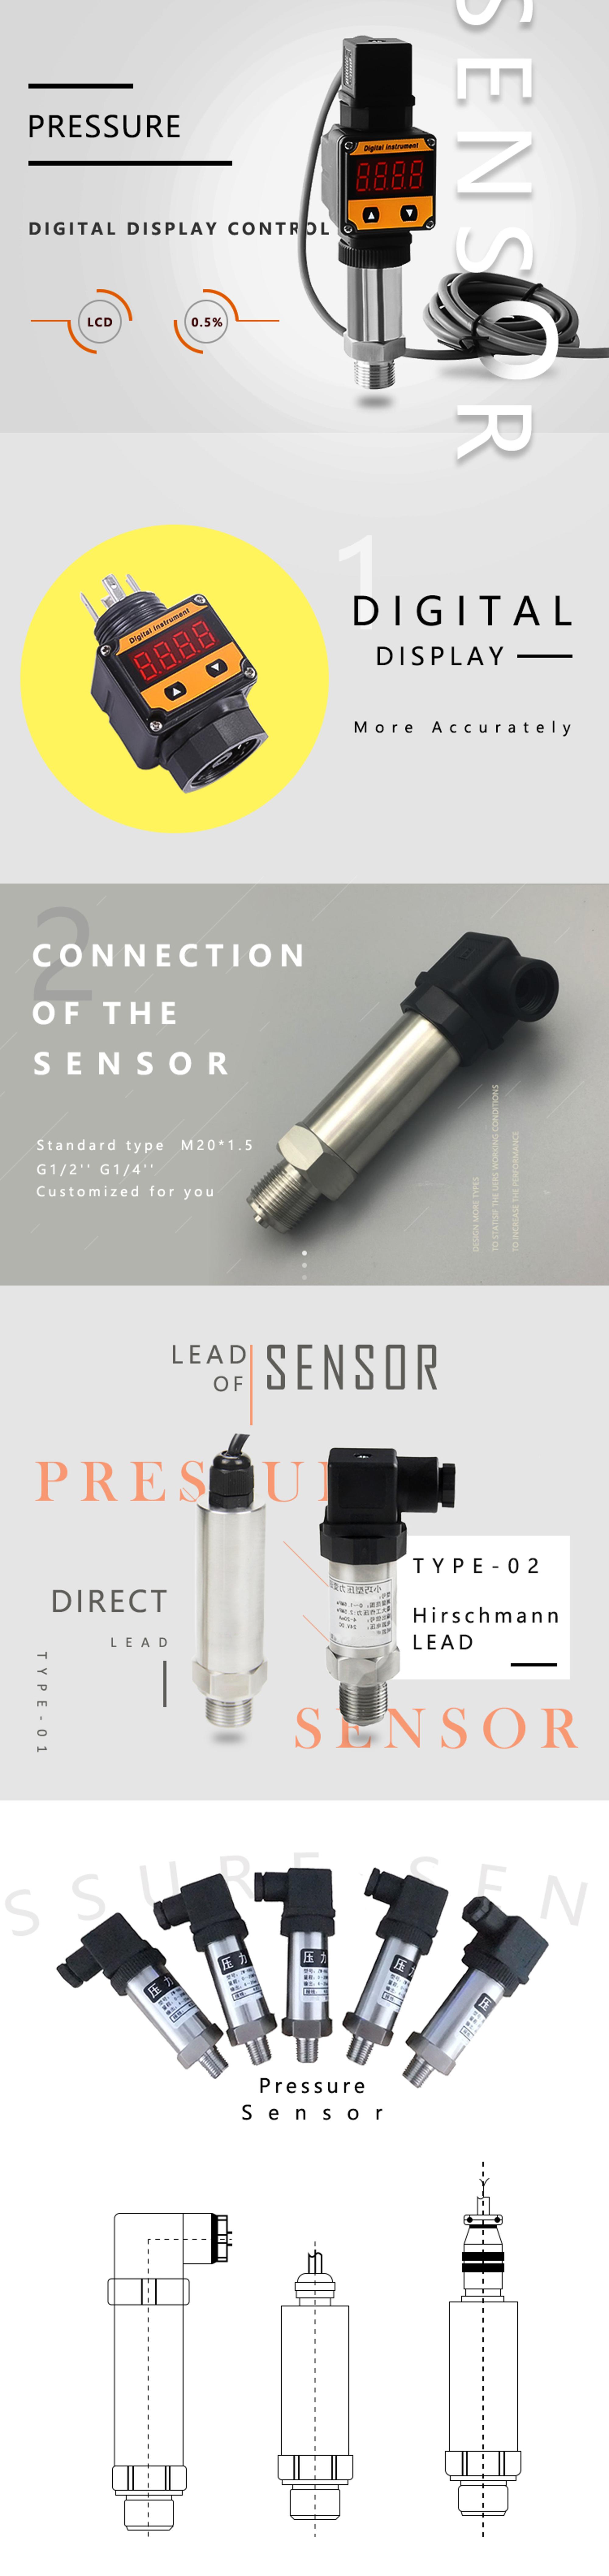 Design of pressure sensor.jpg